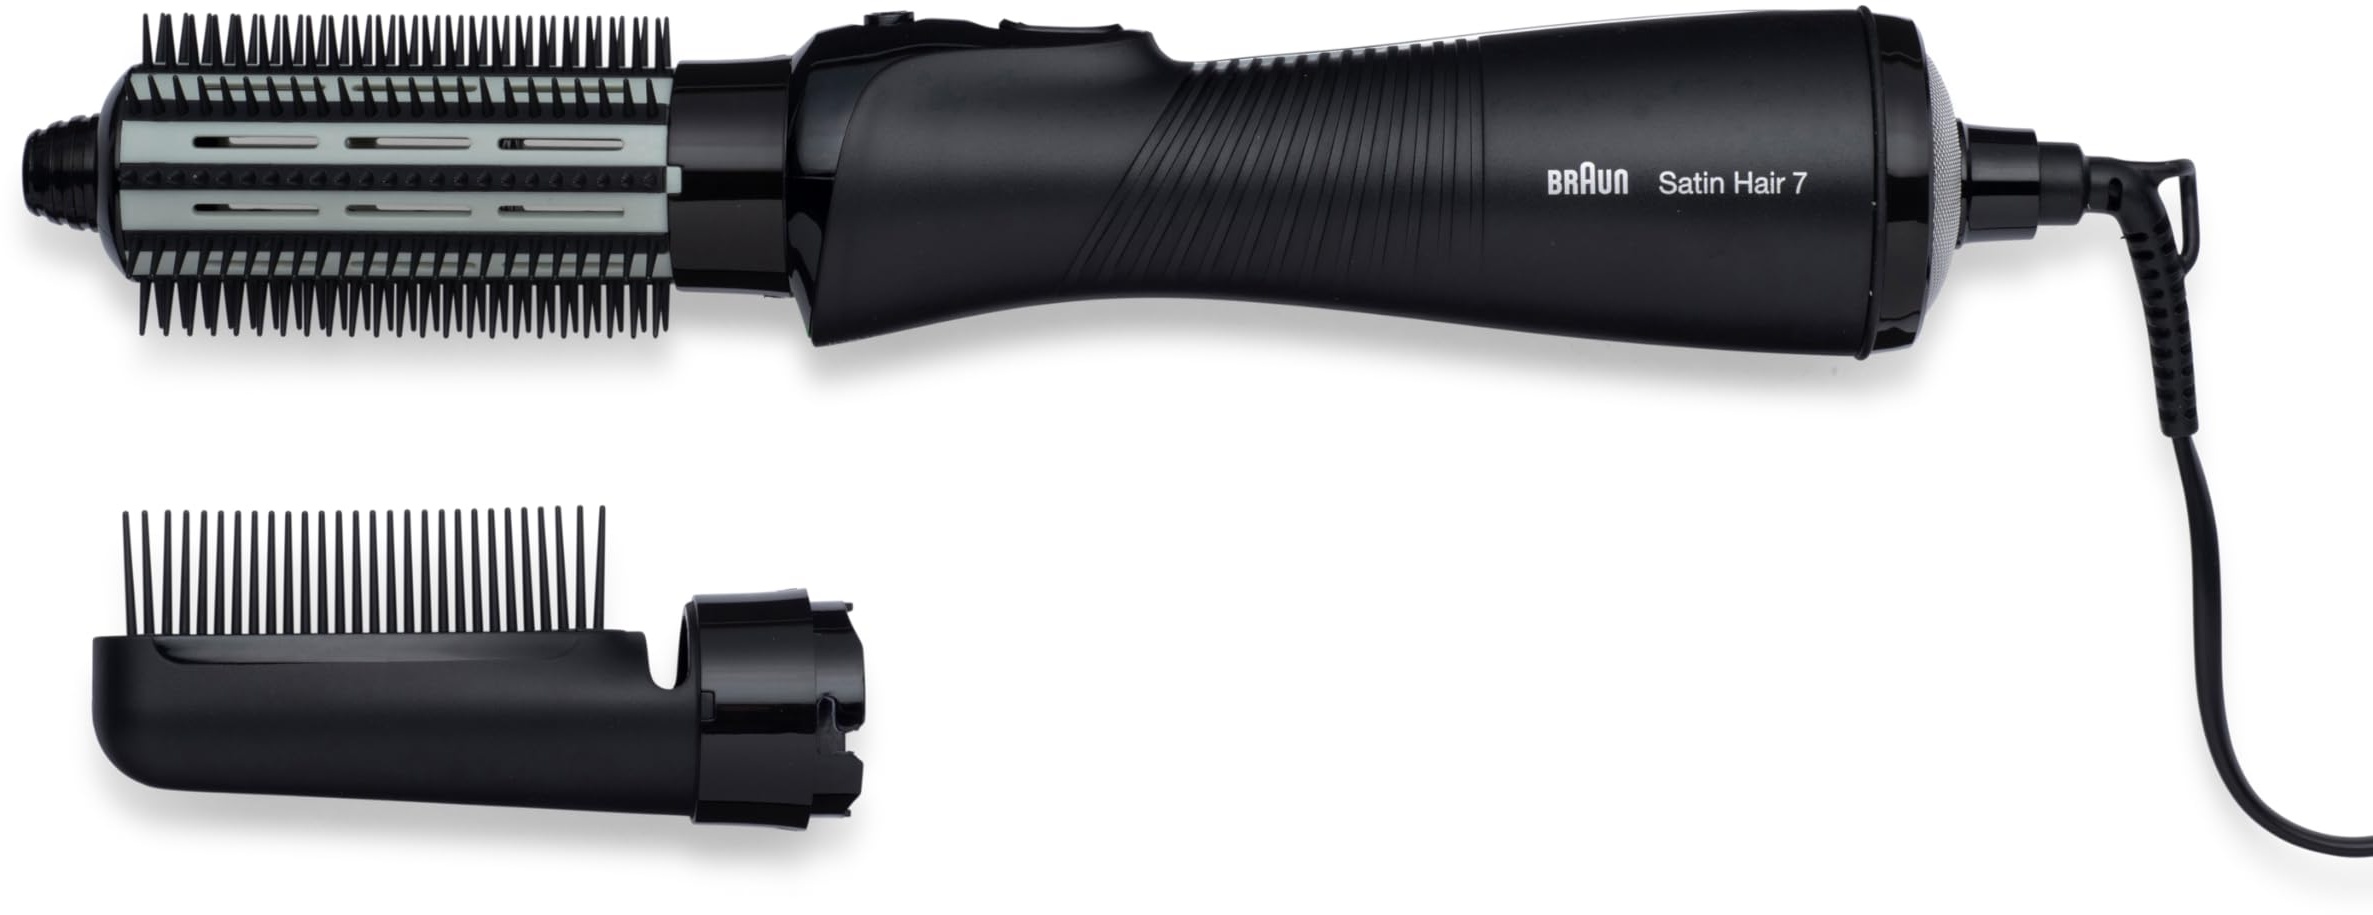 Braun Satin Hair 7 Warmluft-Lockenbürste mit IONTEC Technologie, inkl. Kamm-und Bürstenaufsatz, AS 720, schwarz , 1 Stück (1er Pack)